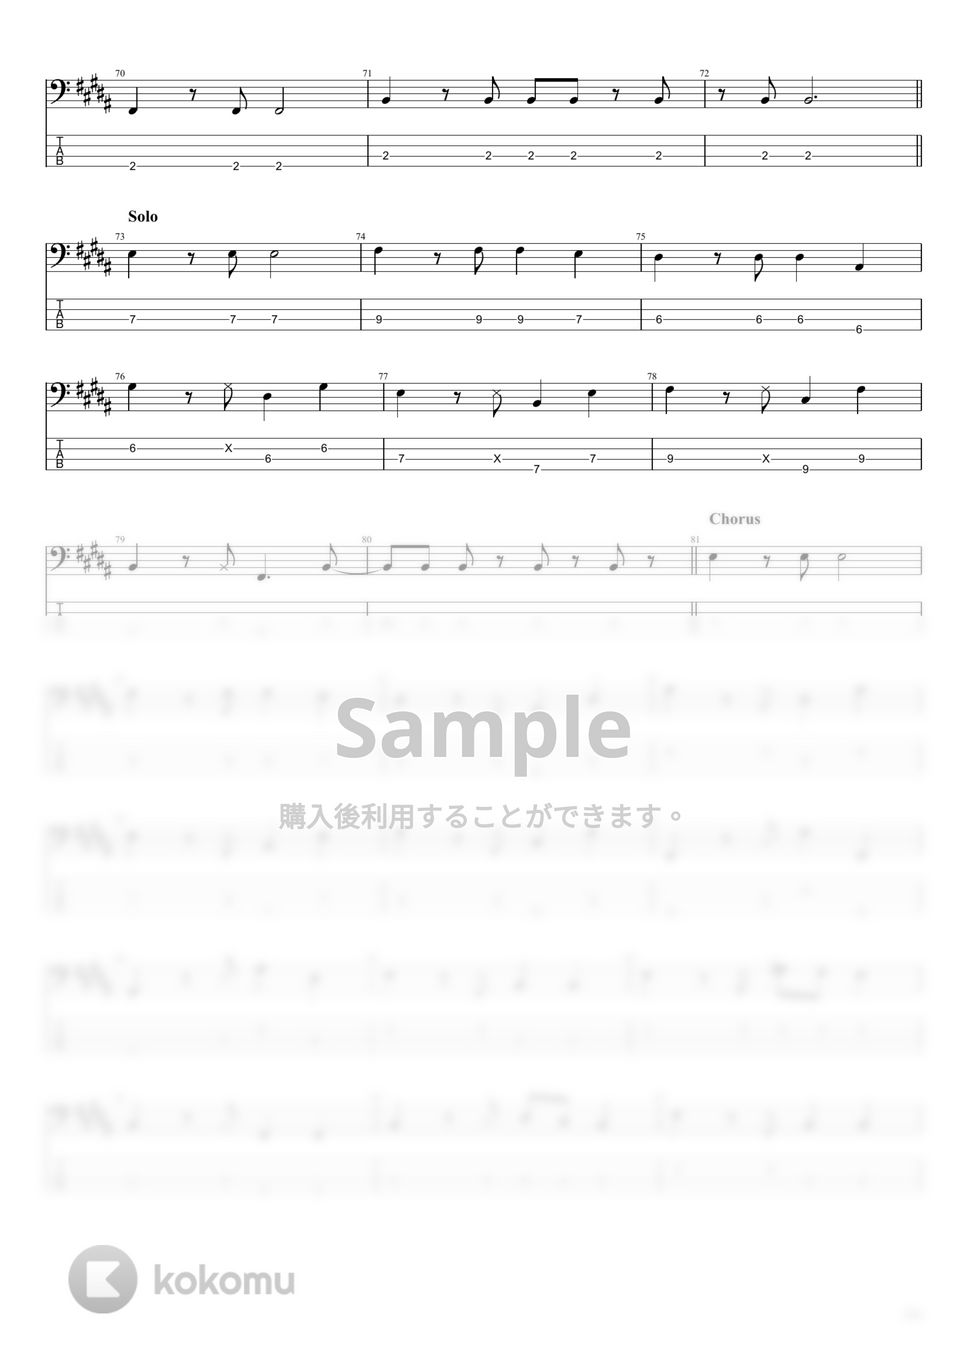 松田聖子「Seiko SPECIAL 」バンドスコア ドレミ楽譜出版社 - エレキギター